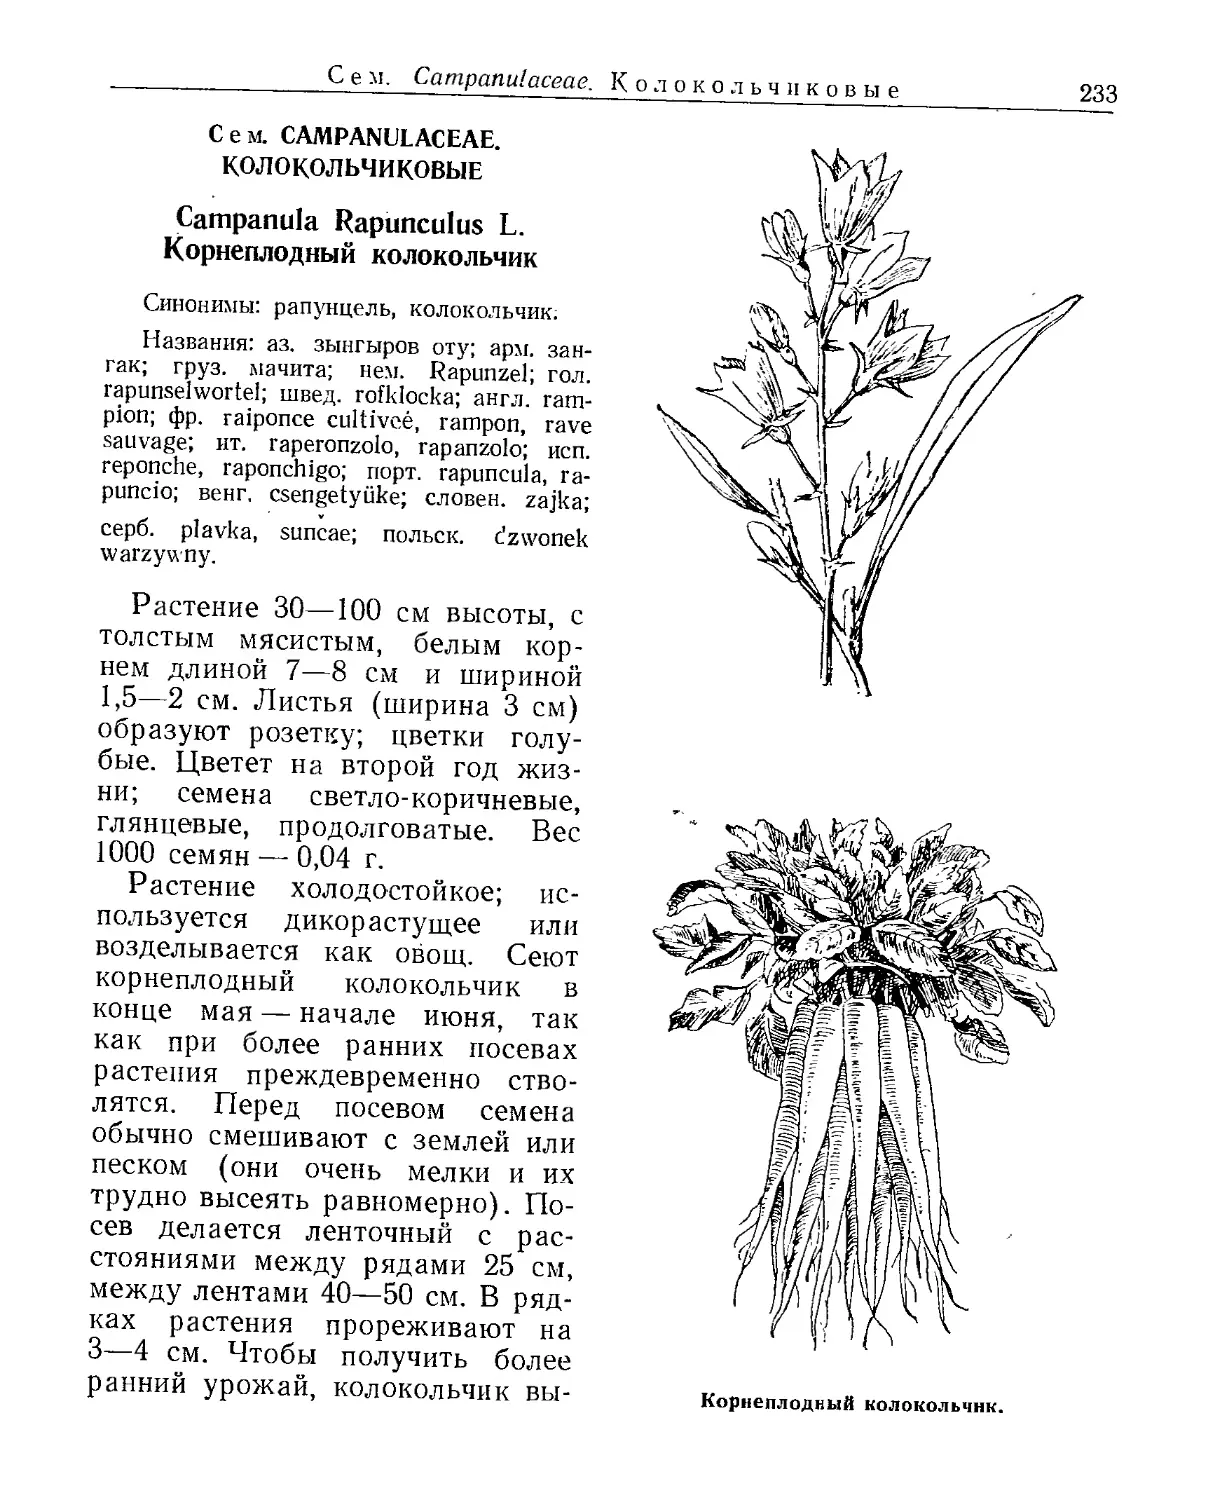 Сем. Campanulaceae. Колокольчиковые